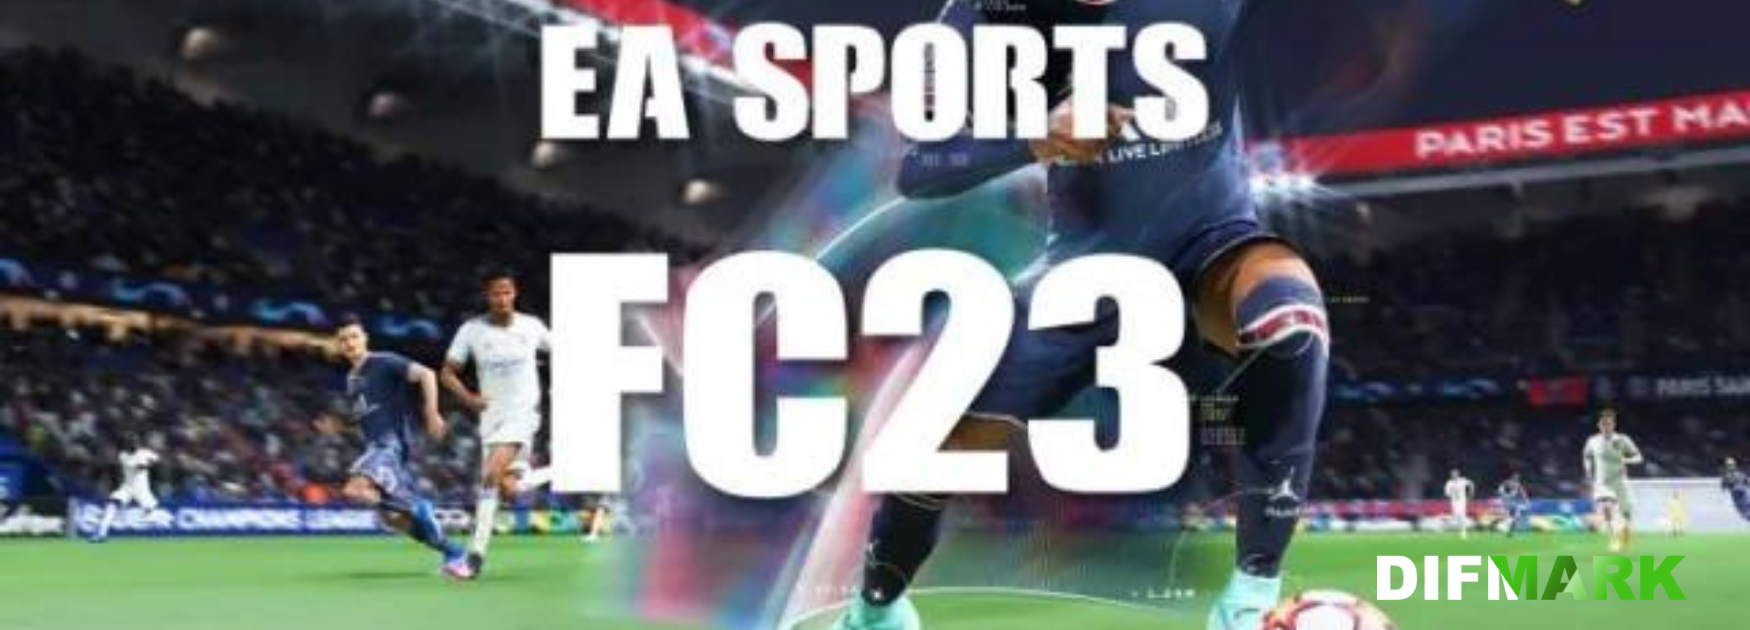 EA tomó la decisión de cambiar el nombre de FIFA a EA Sports Football Club